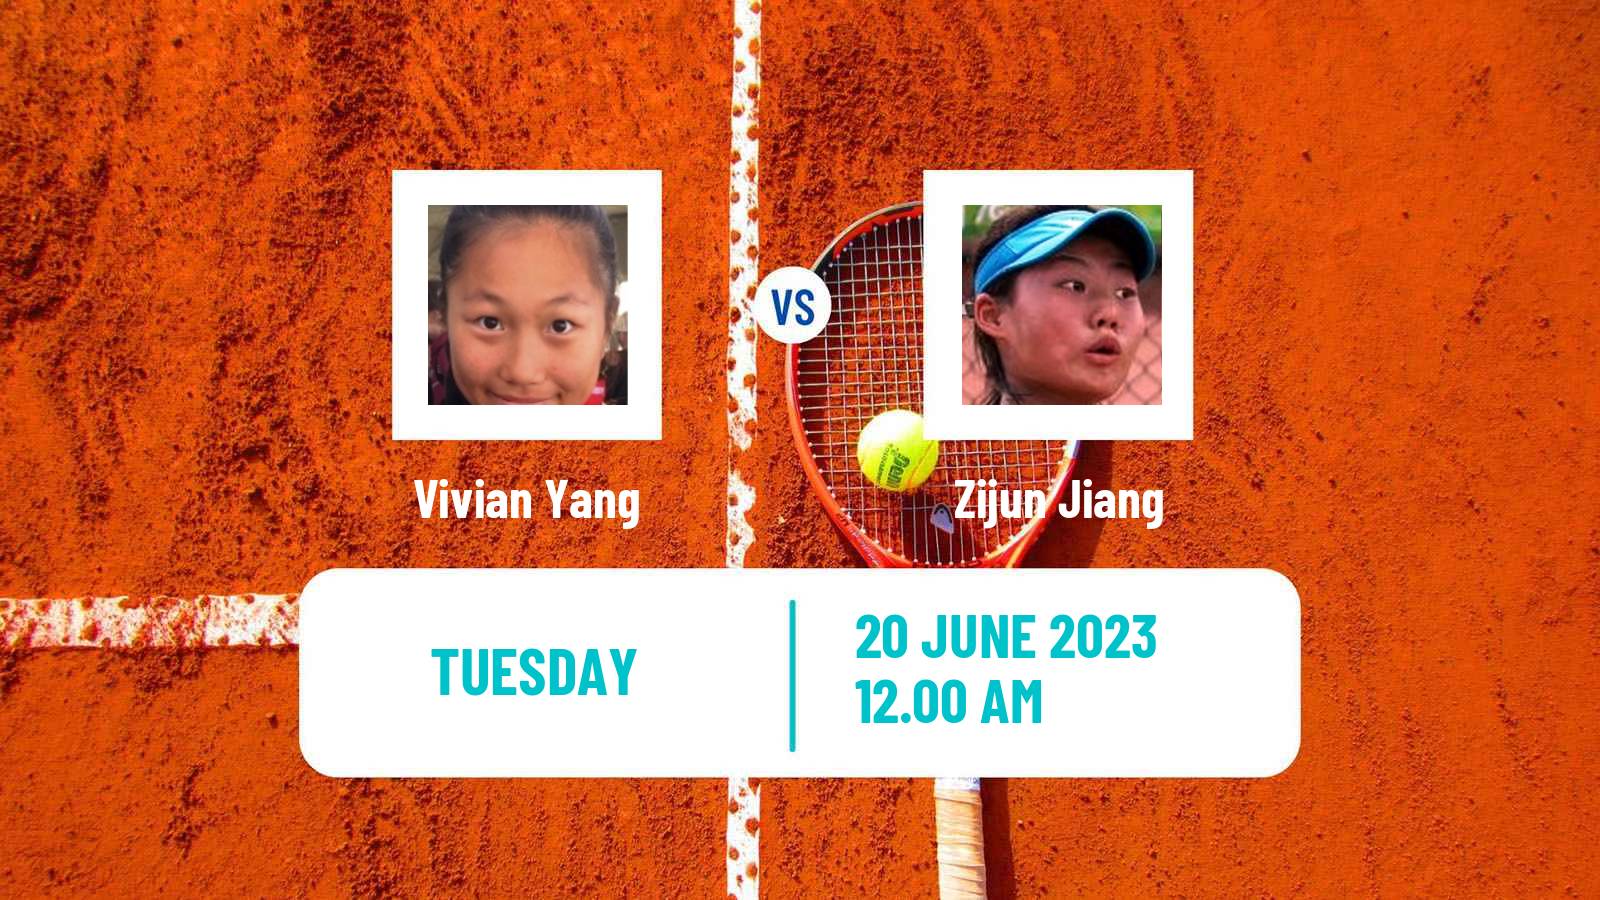 Tennis ITF W15 Tianjin 2 Women Vivian Yang - Zijun Jiang